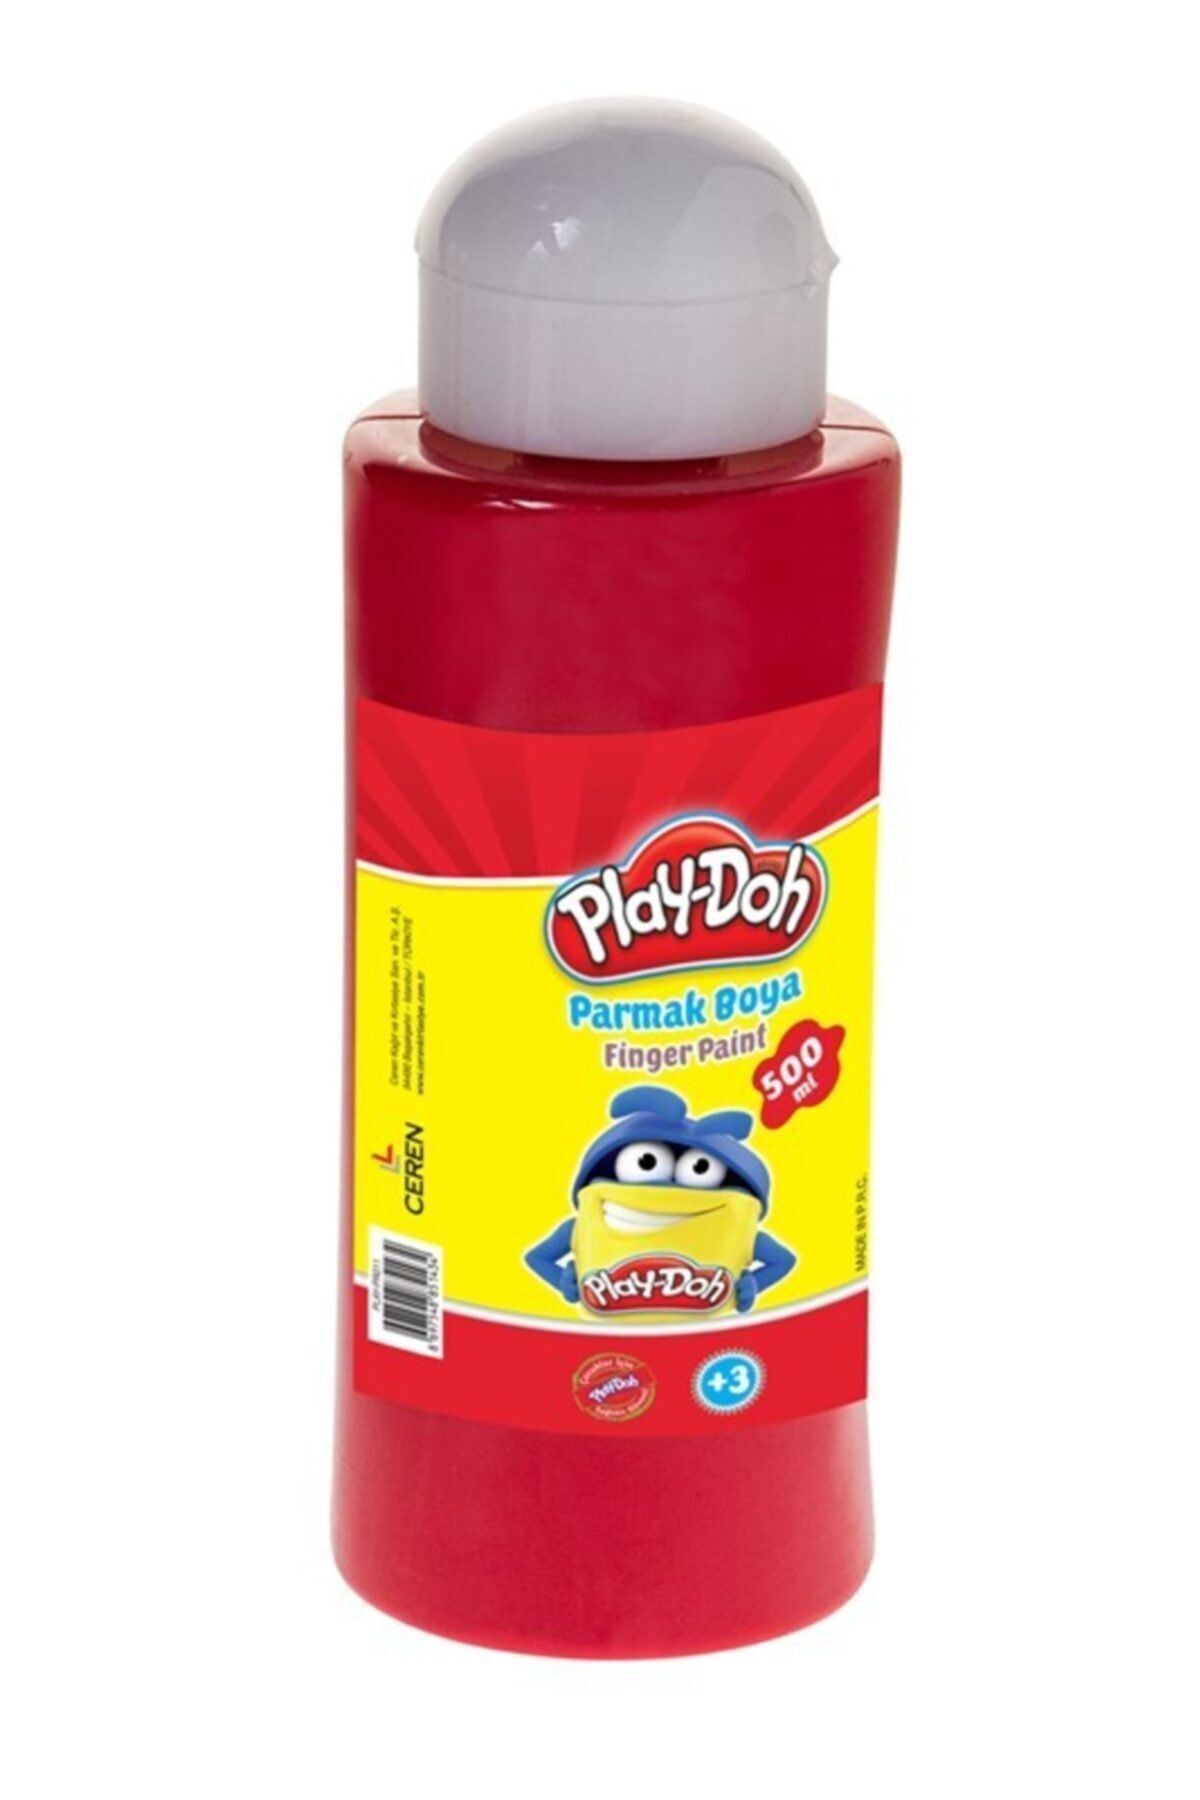 Play Doh Play-doh Parmak Boyası Kırmızı 500 ml Pr011